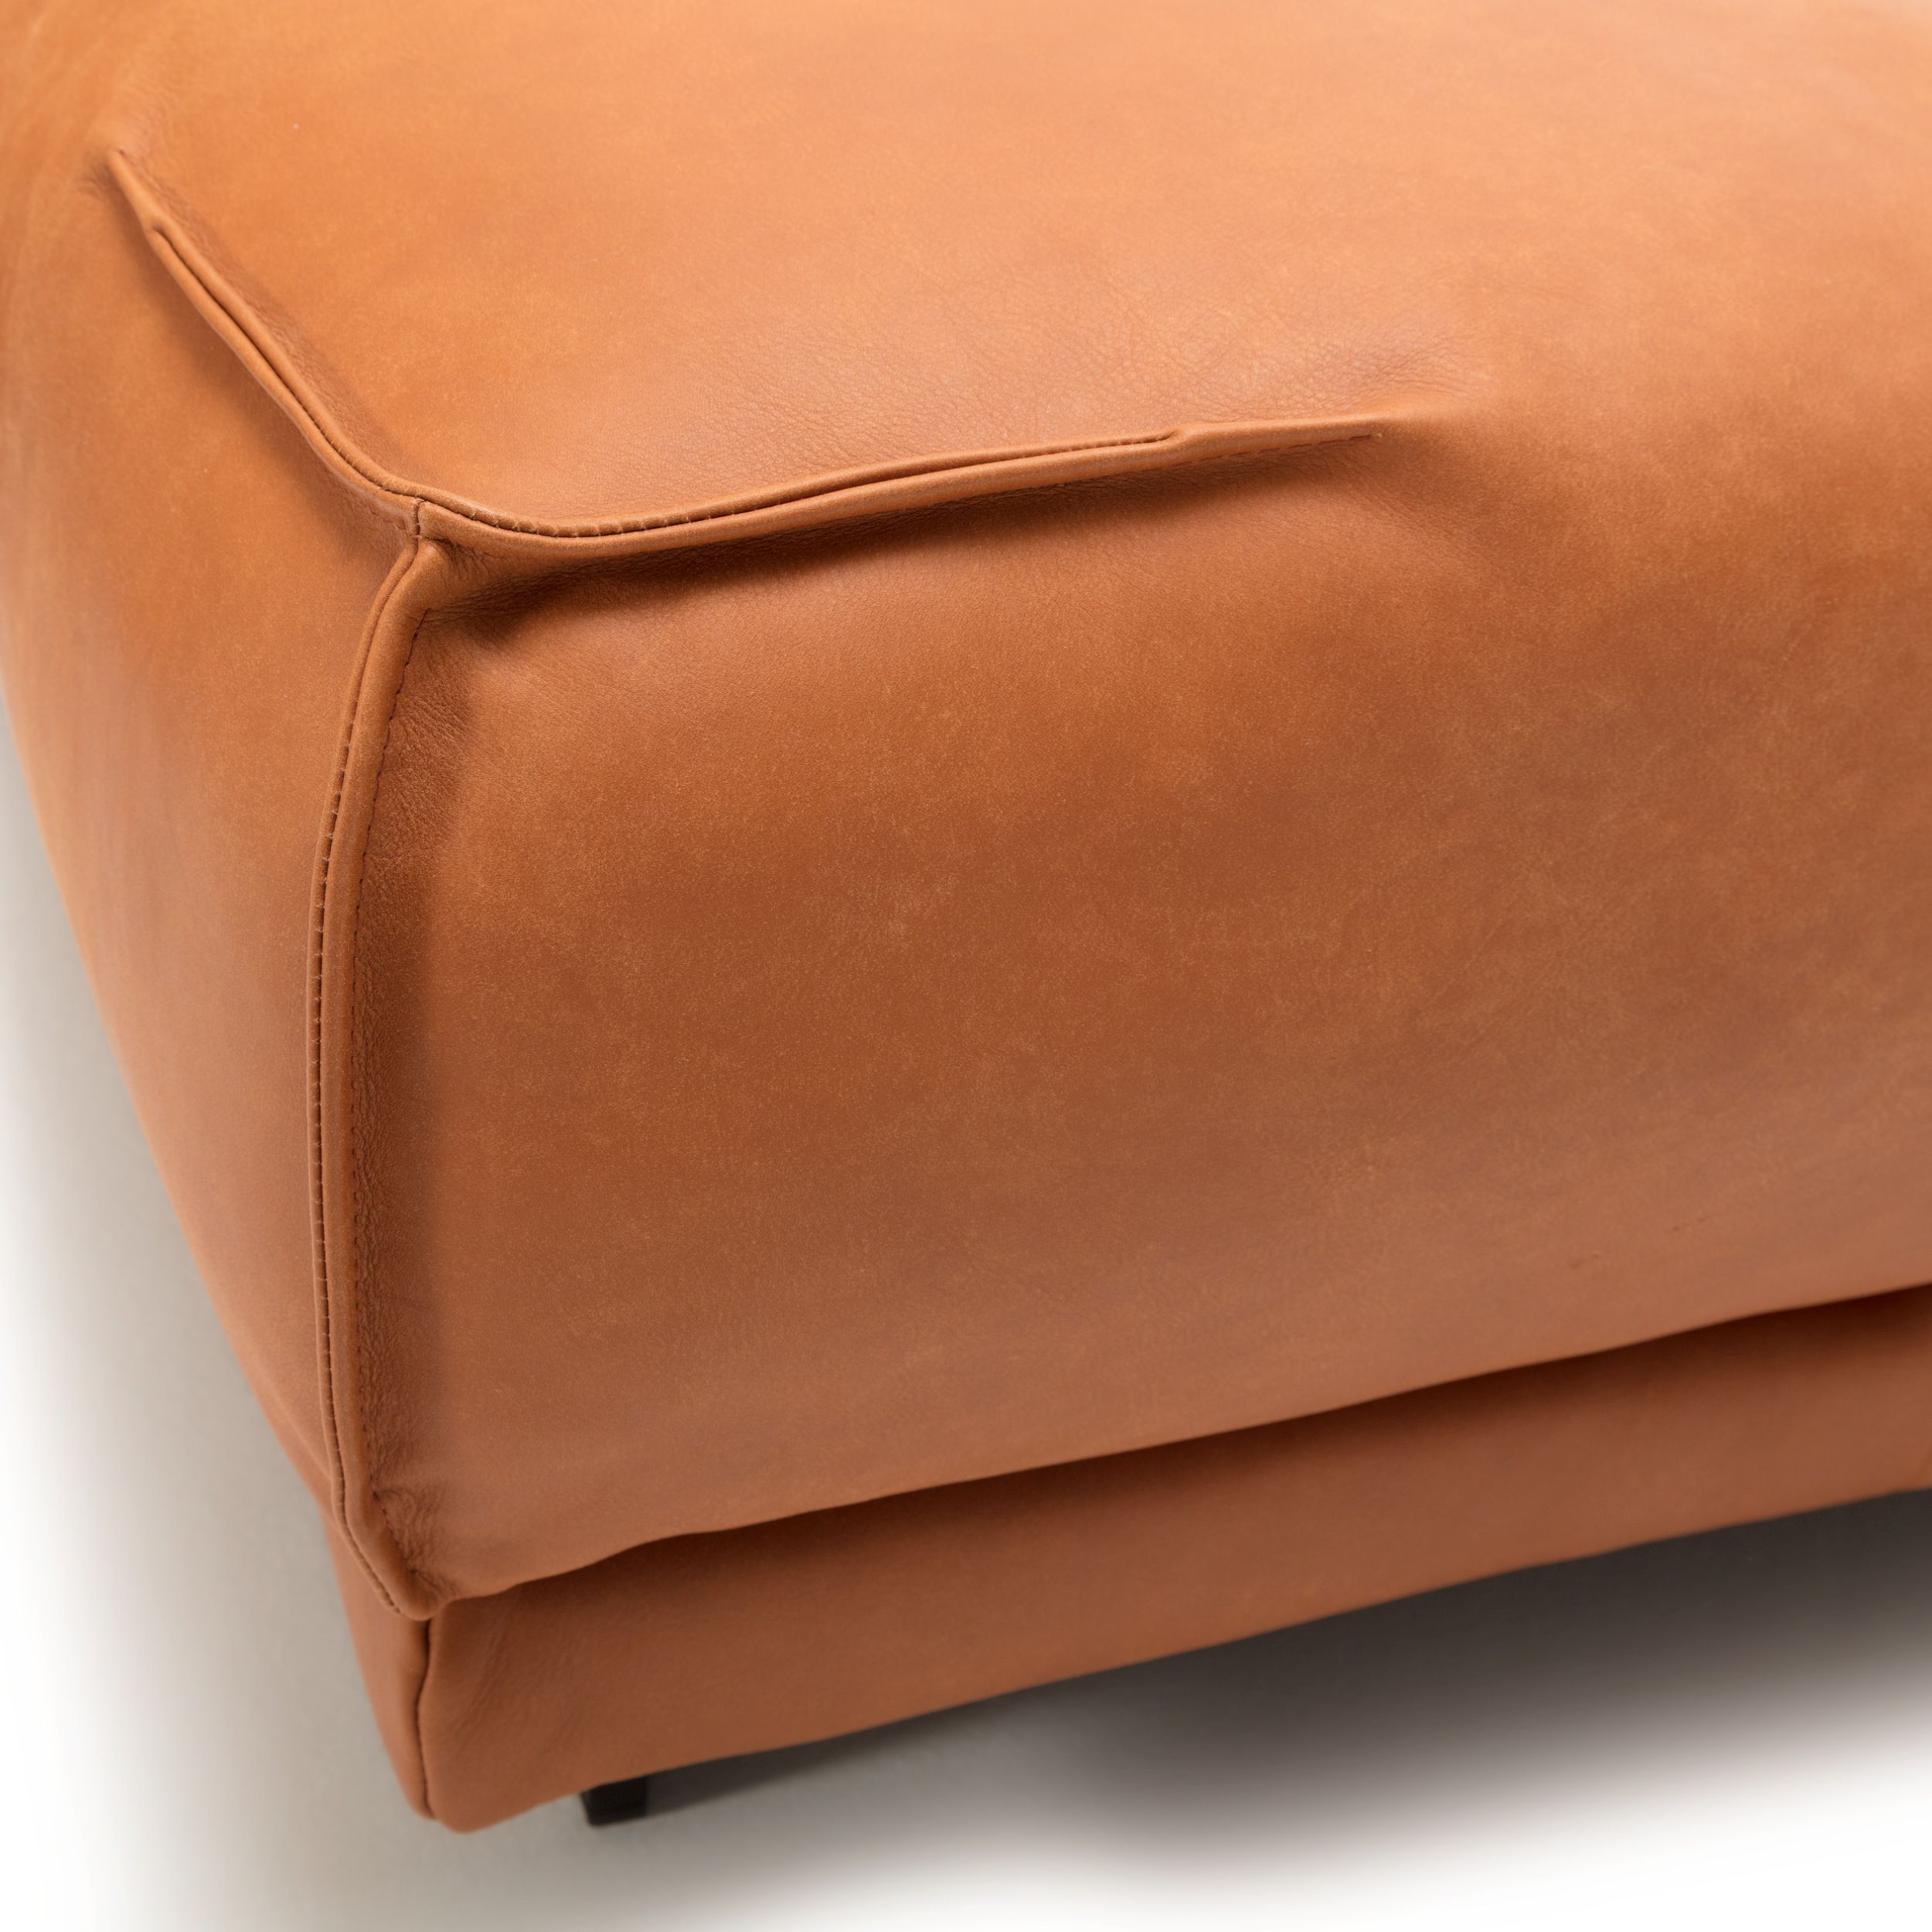 Sofa Collection Freistil 136 in braun Detail der Sitzkante